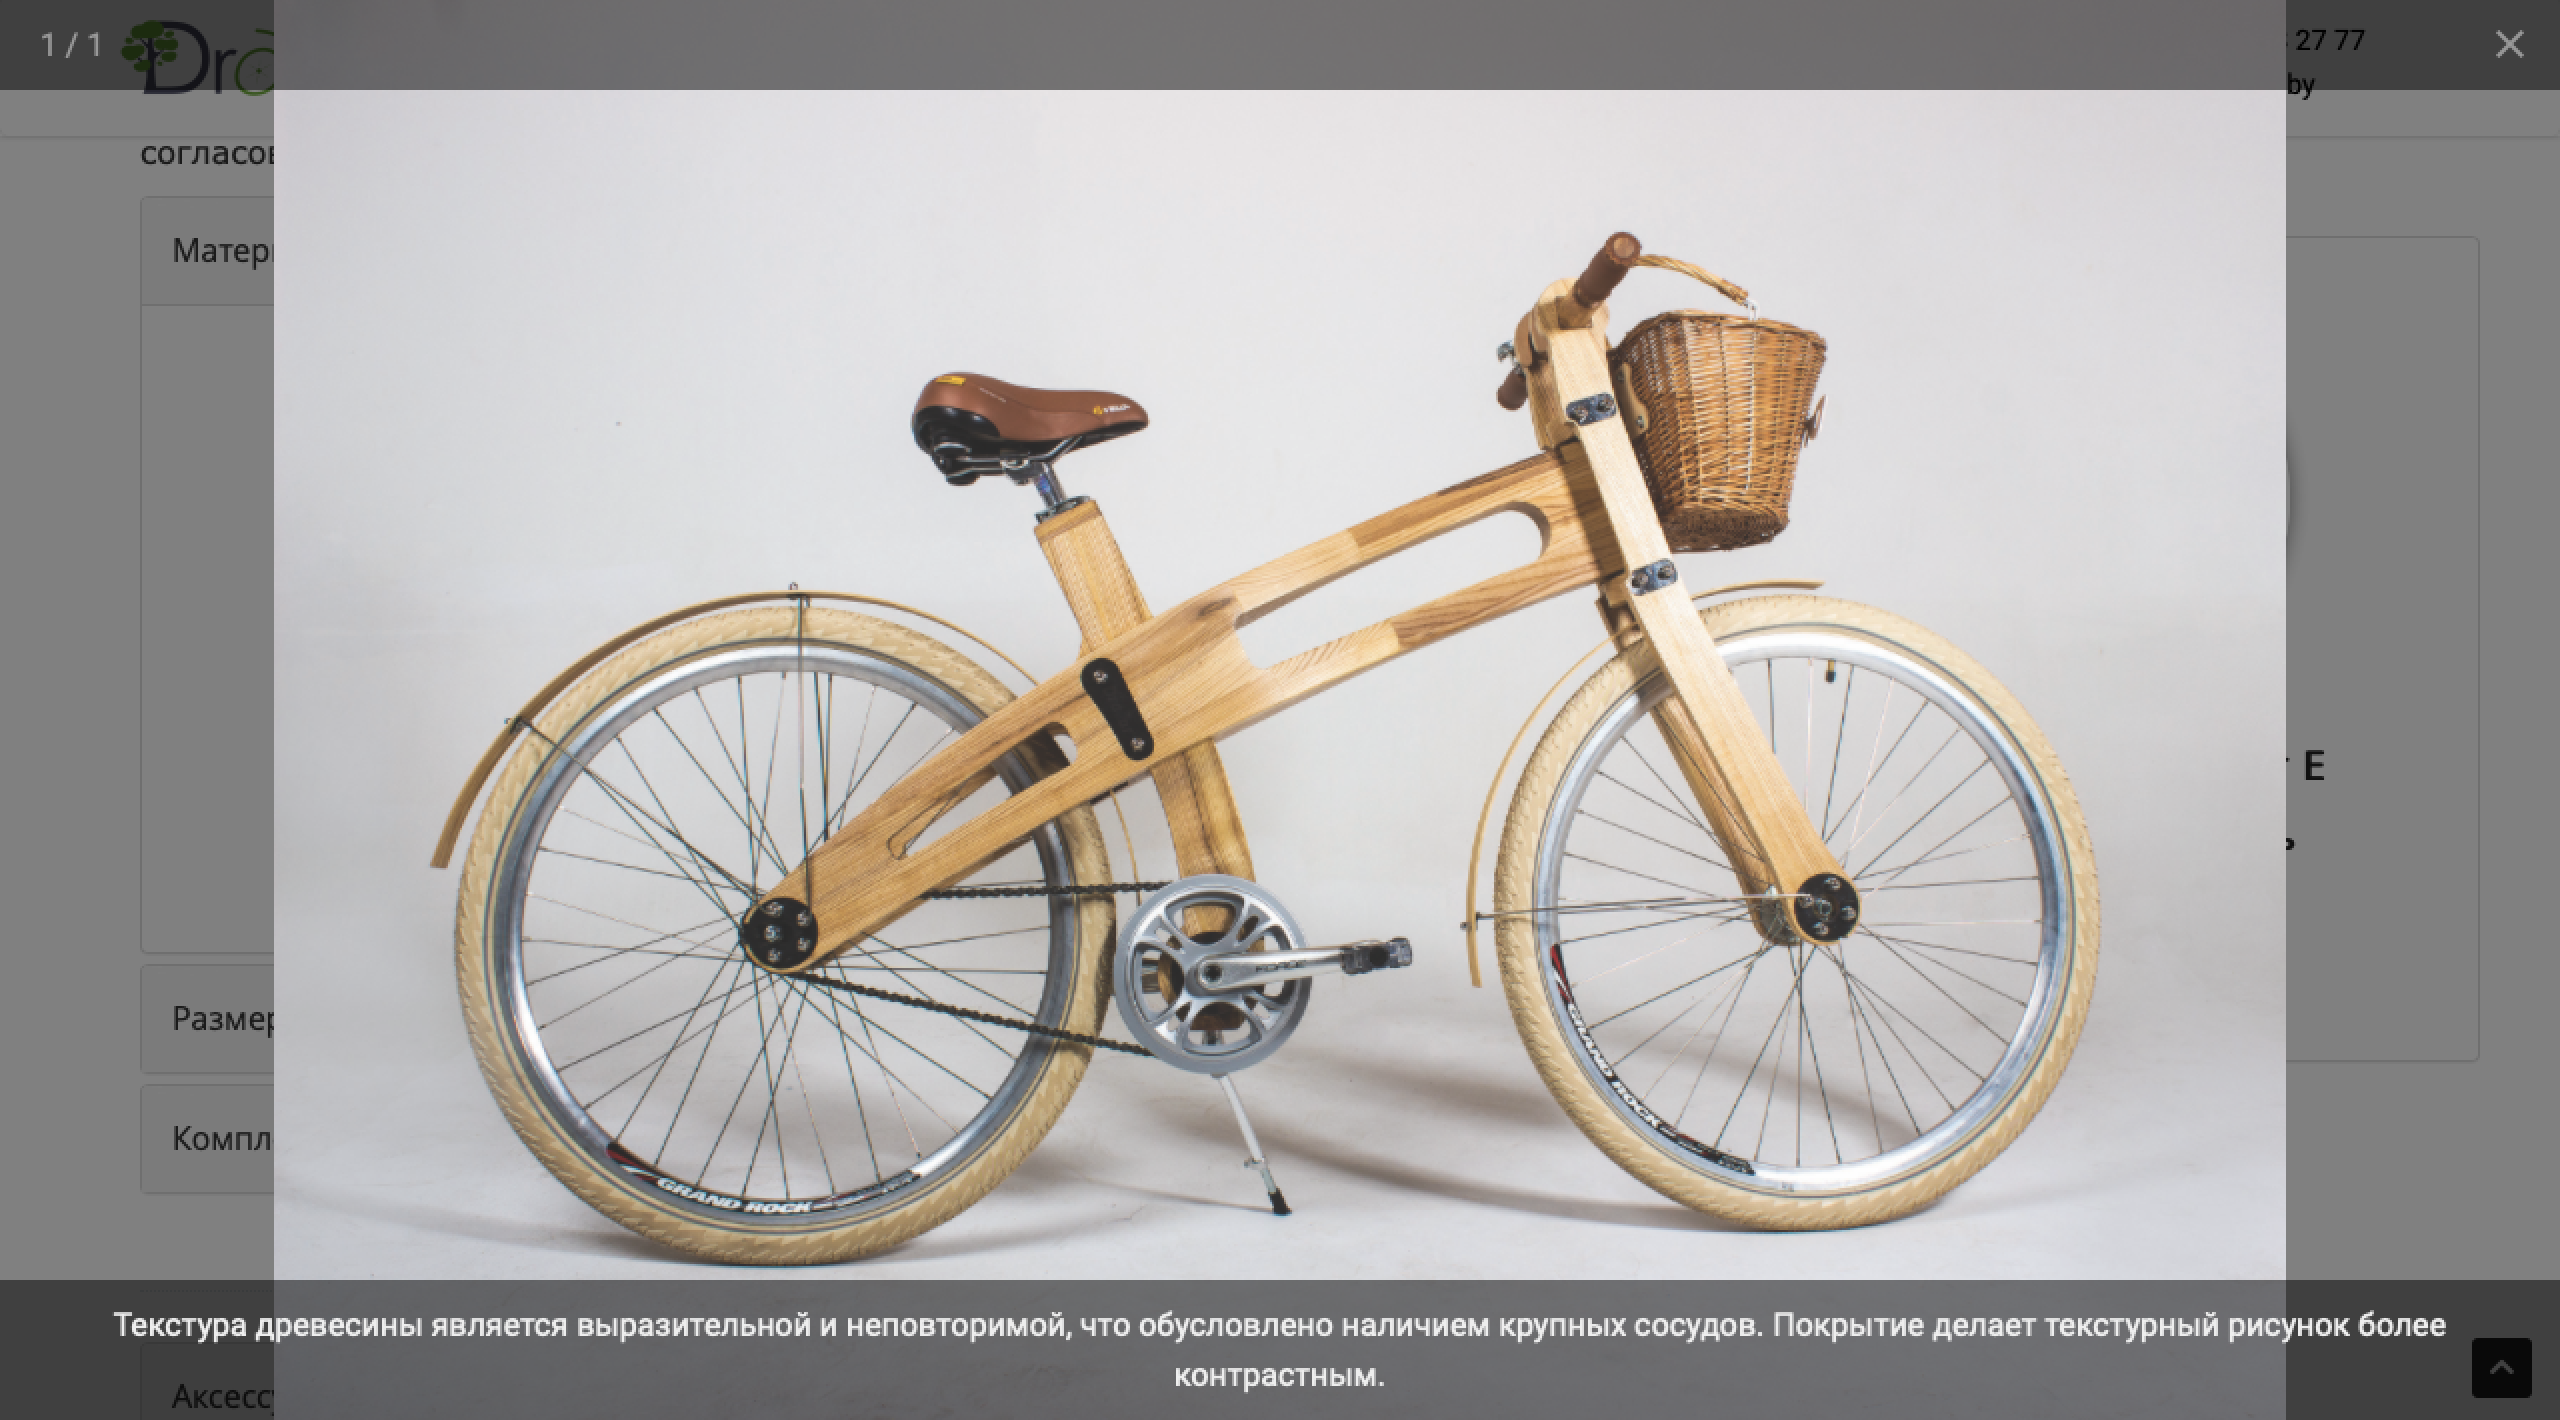 сайт производителя эксклюзивных деревянных велосипедов